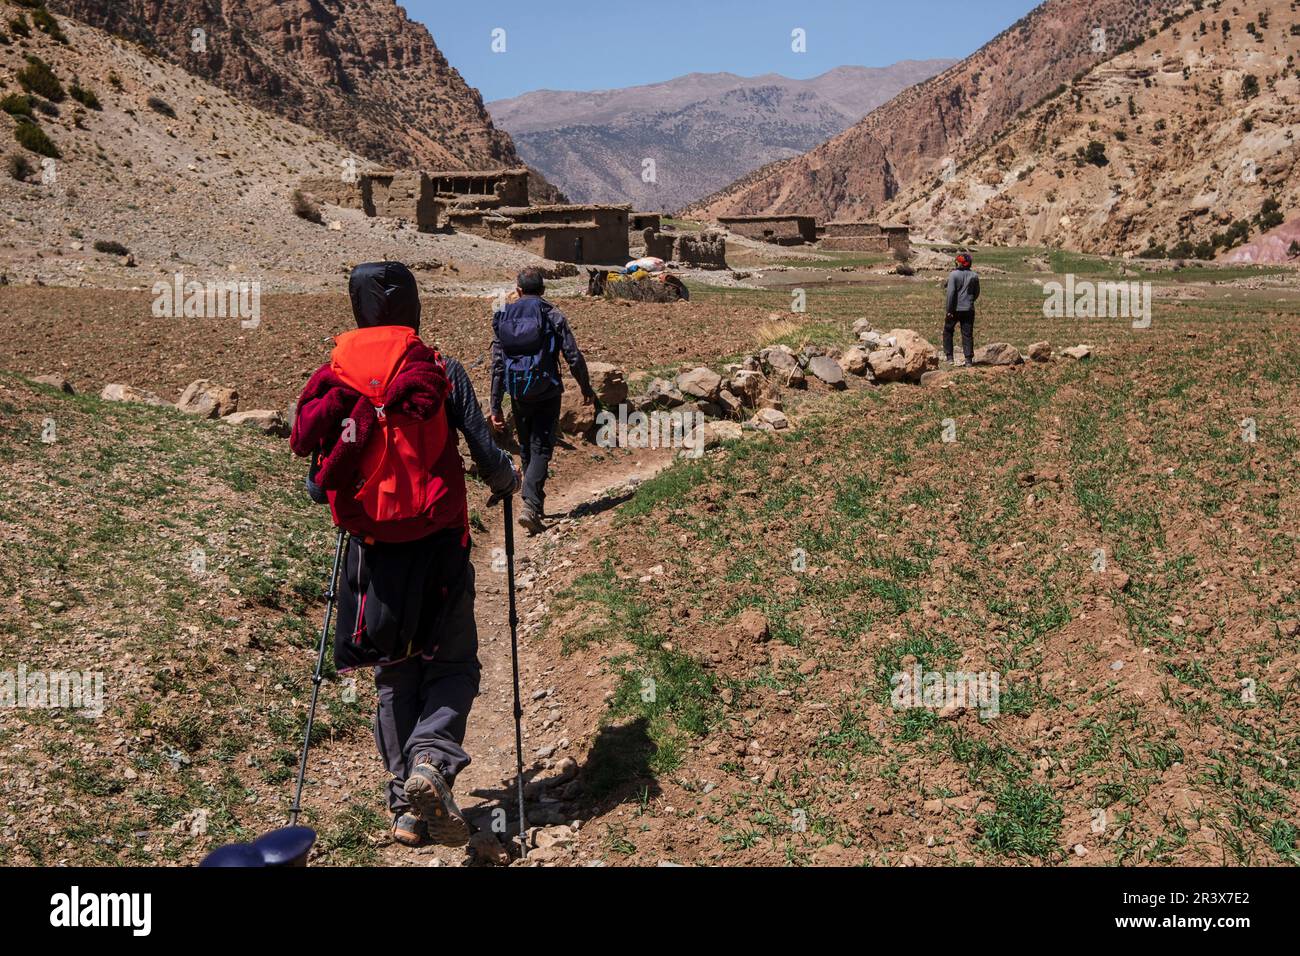 Randonneurs sur le sentier, randonnée MGoun, ait Said, chaîne de montagnes de l'Atlas, maroc, afrique. Banque D'Images